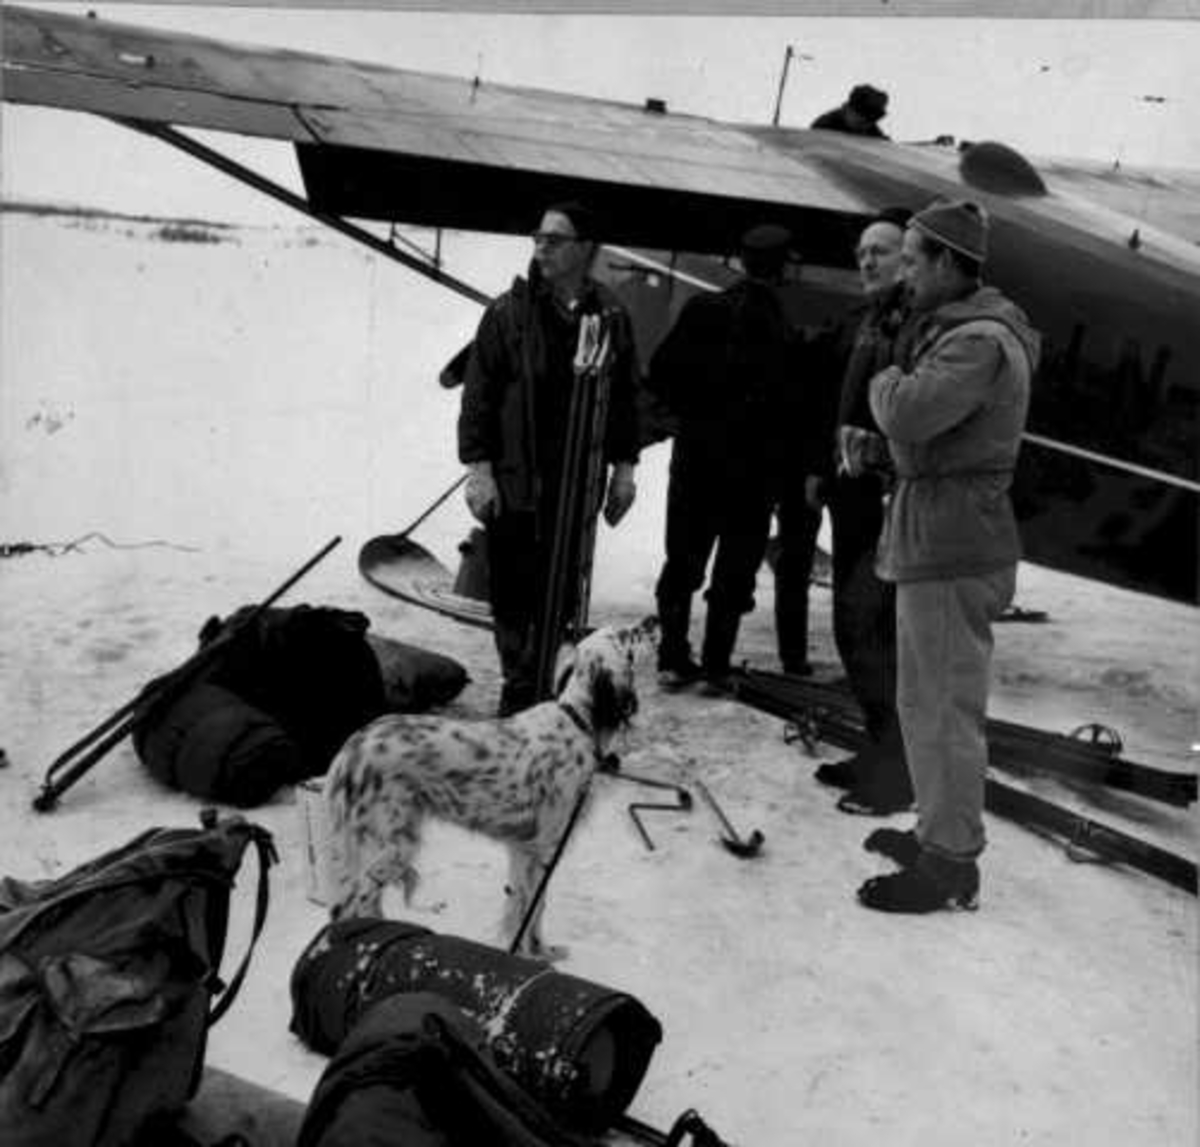 Ett fly på bakken med skiunderstell, C-5 Polar. Flere personer, utstyr og en hund ved flyet.